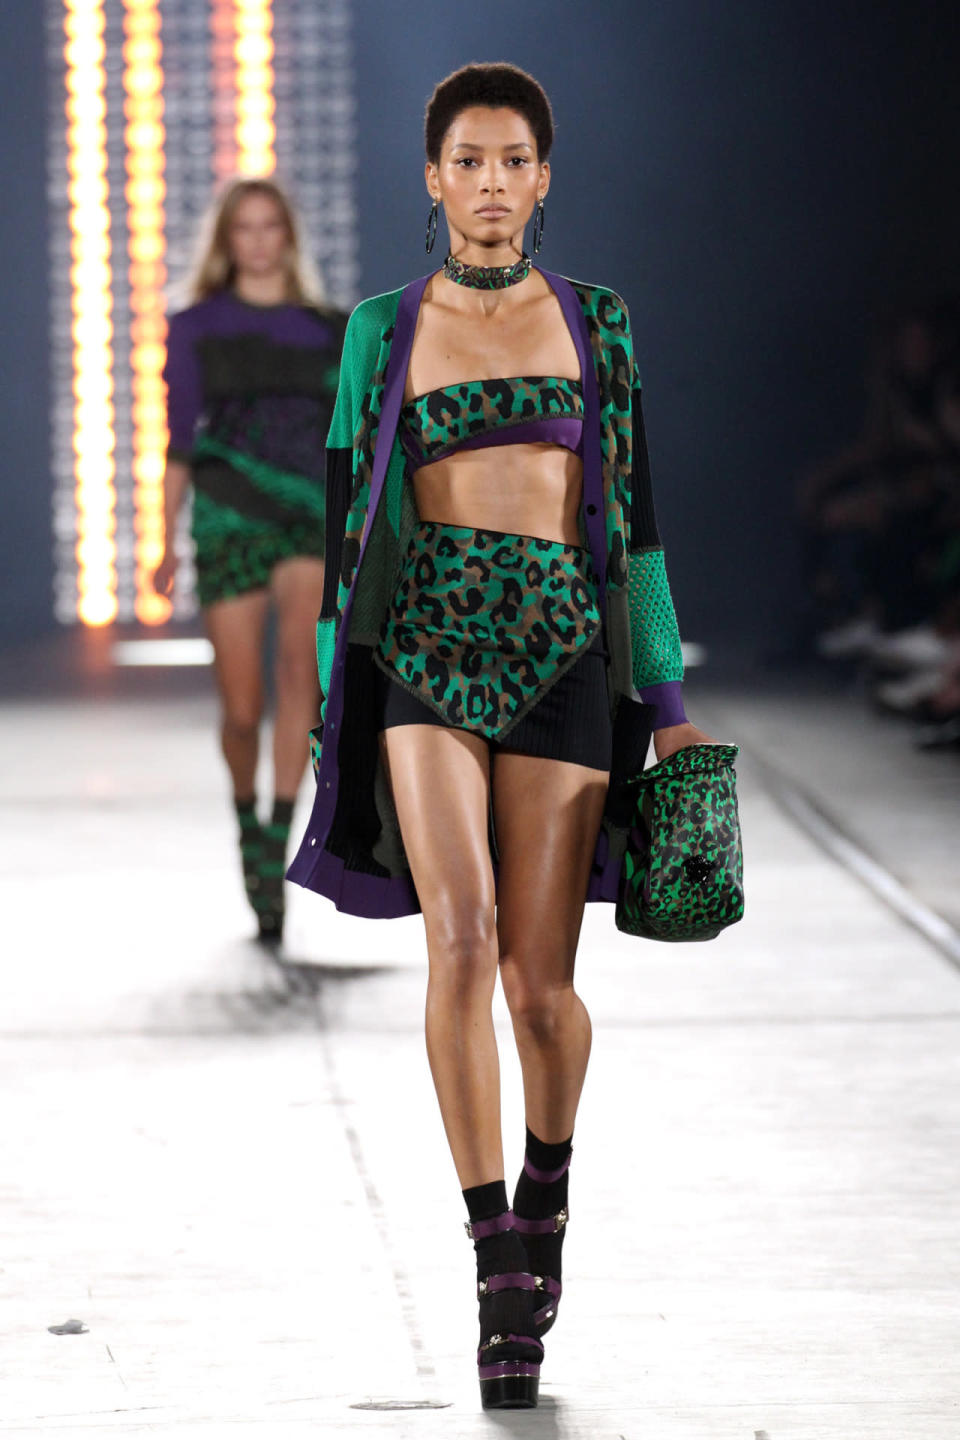 Lineisy Montero walks in Versace’s spring 2016 runway show in Milan.